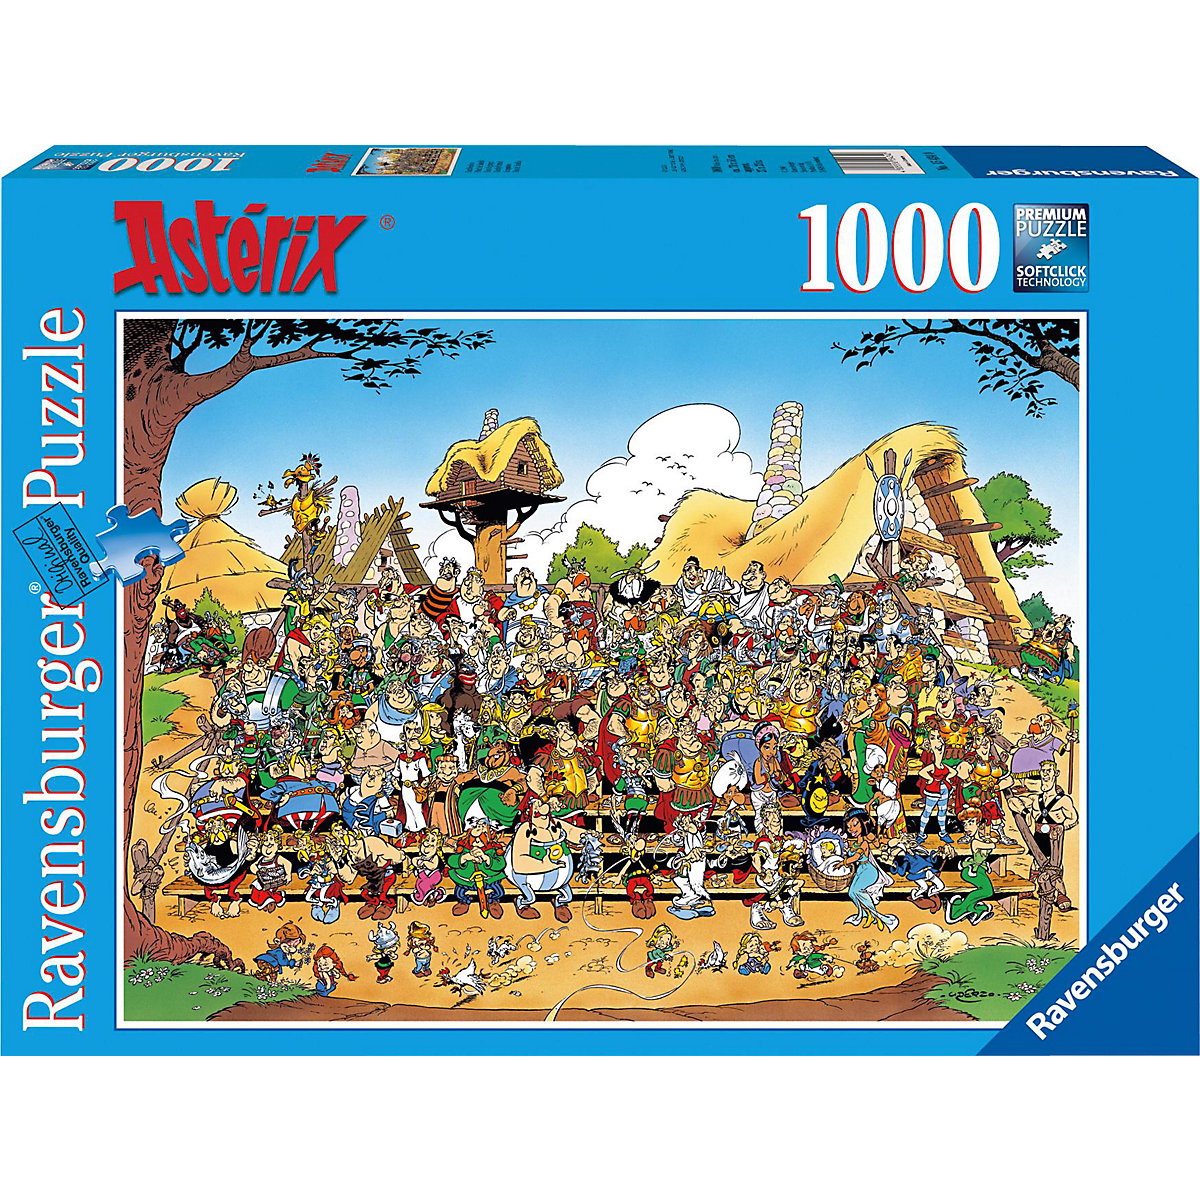 Ravensburger Puzzle 1000 Teile 70x50 cm Asterix Familienfoto